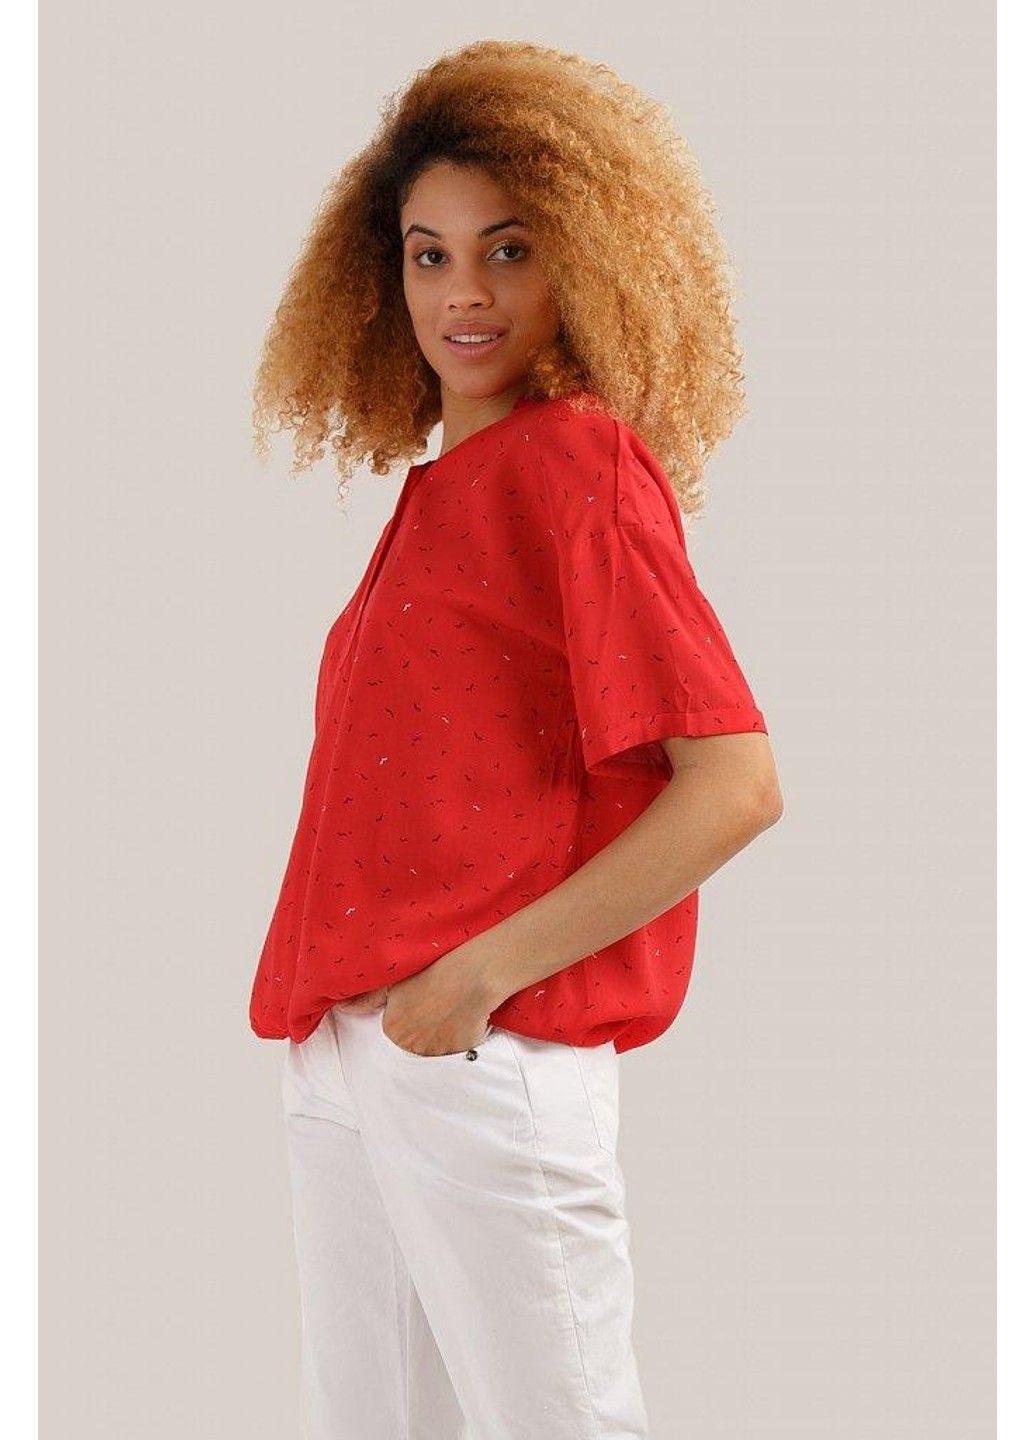 Красная летняя блузка s19-14080-420 Finn Flare